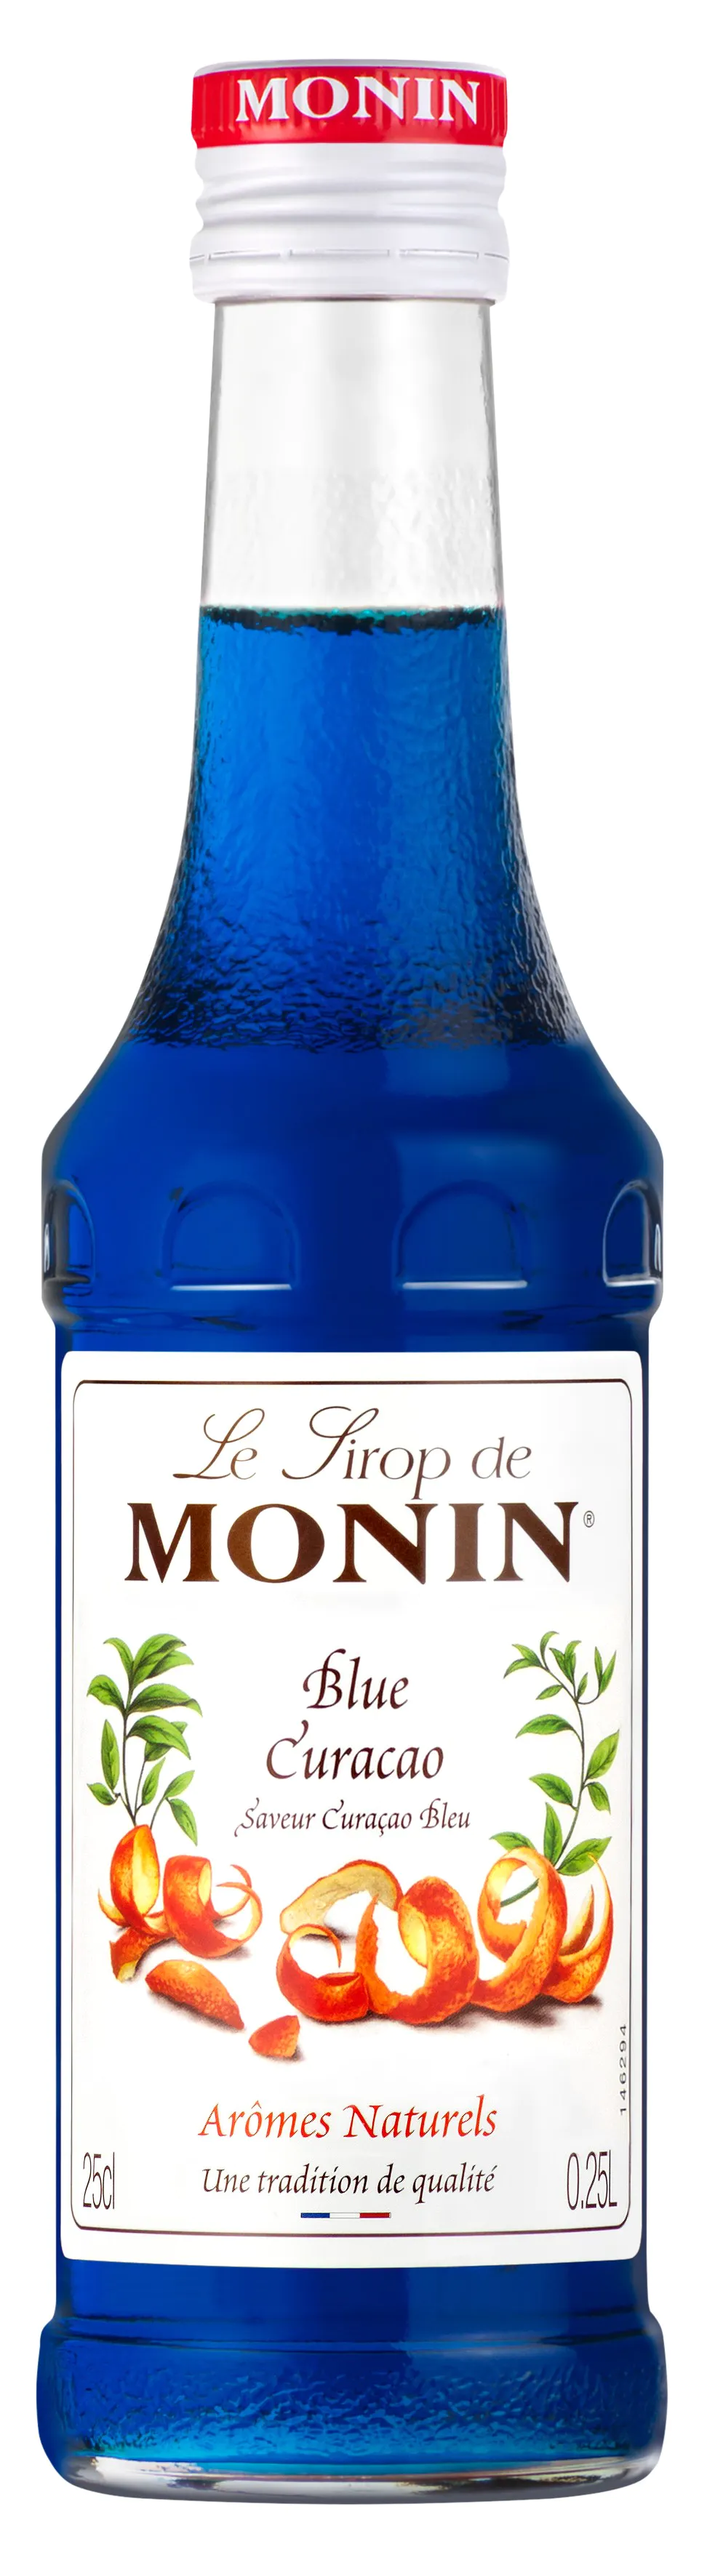 SIROP CURACAO BLEU CL MONIN MONIN : Le Comptoir des Régions : épicerie  fine, cave, produits régionaux, Moulins Allier bourbonnais